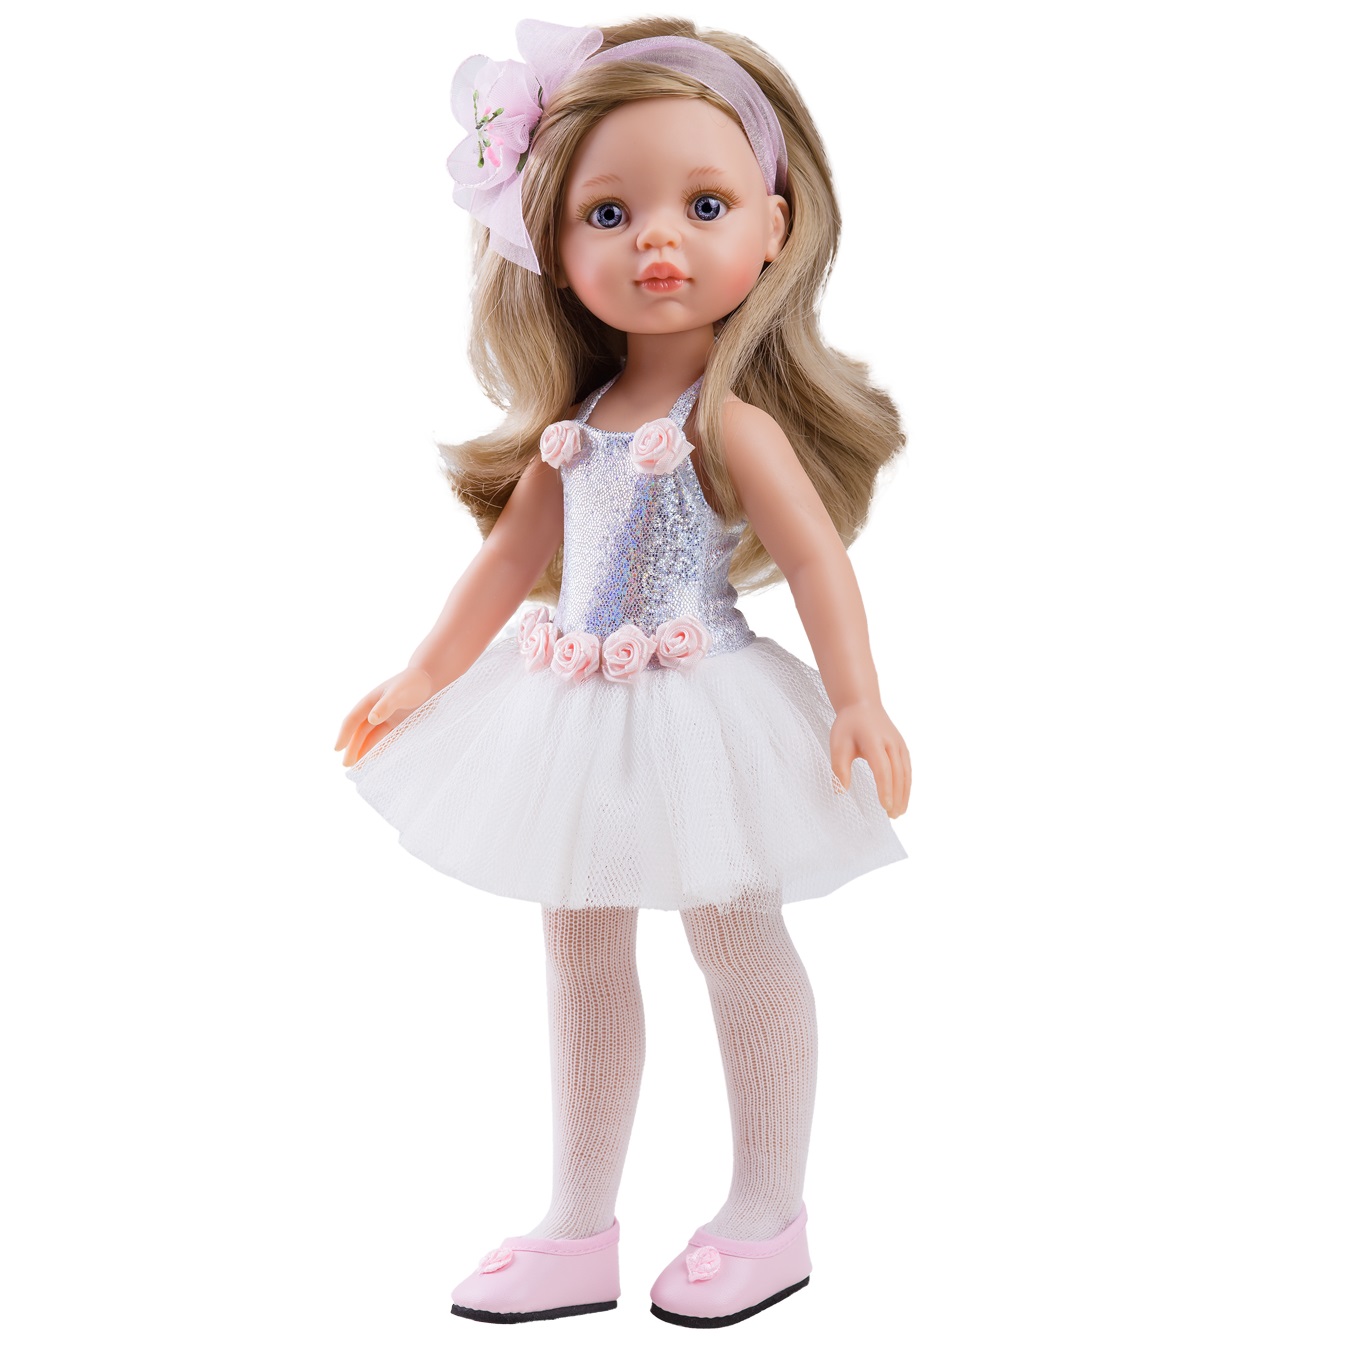 Одежда для кукол 32 см. Кукла Паола Рейна. Паола Рейна куклы 32 см. Испанские куклы Паола Рейна.